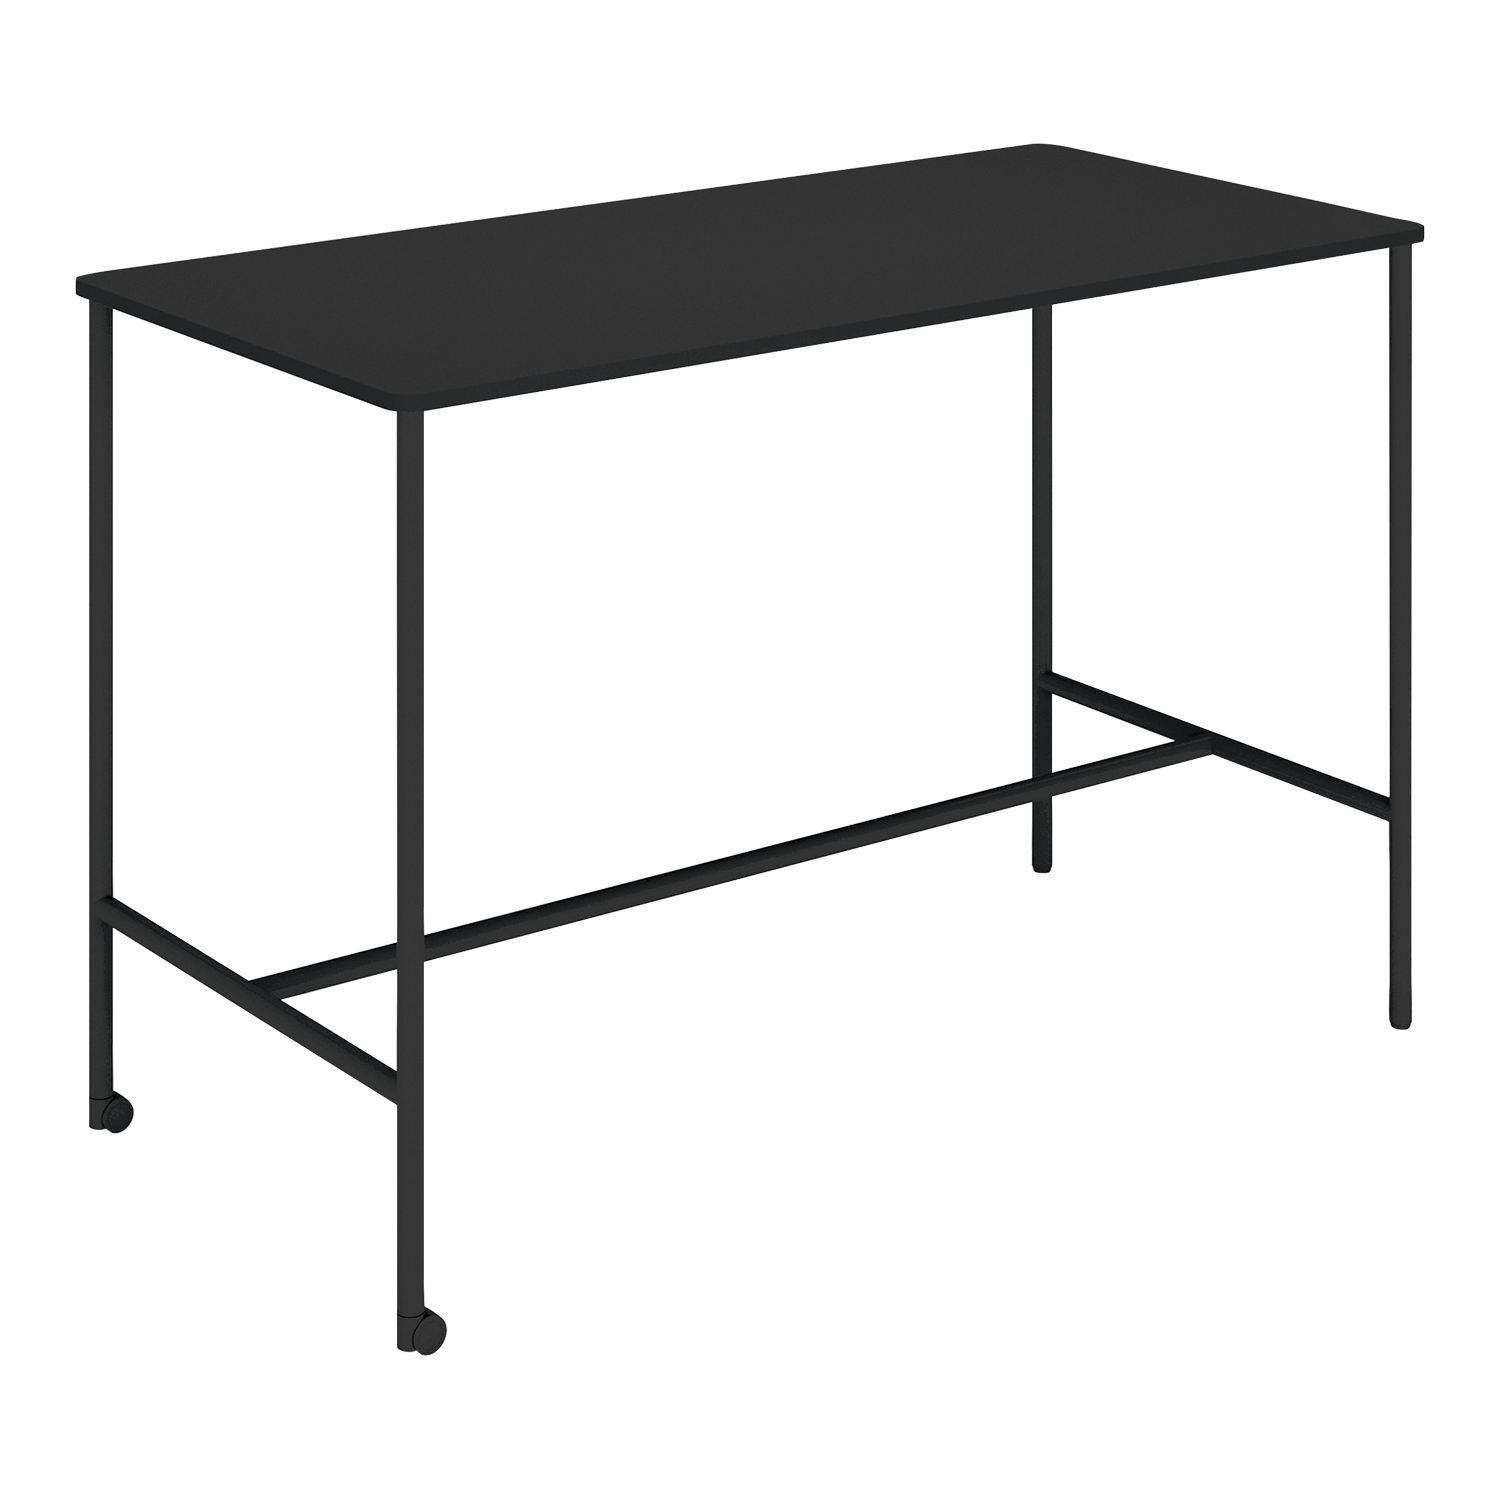 【ラクラク納品】コクヨ ミーティングテーブル Any Table エニー テーブル TAN-MK1507H1 角形 W150×D75×H100cm